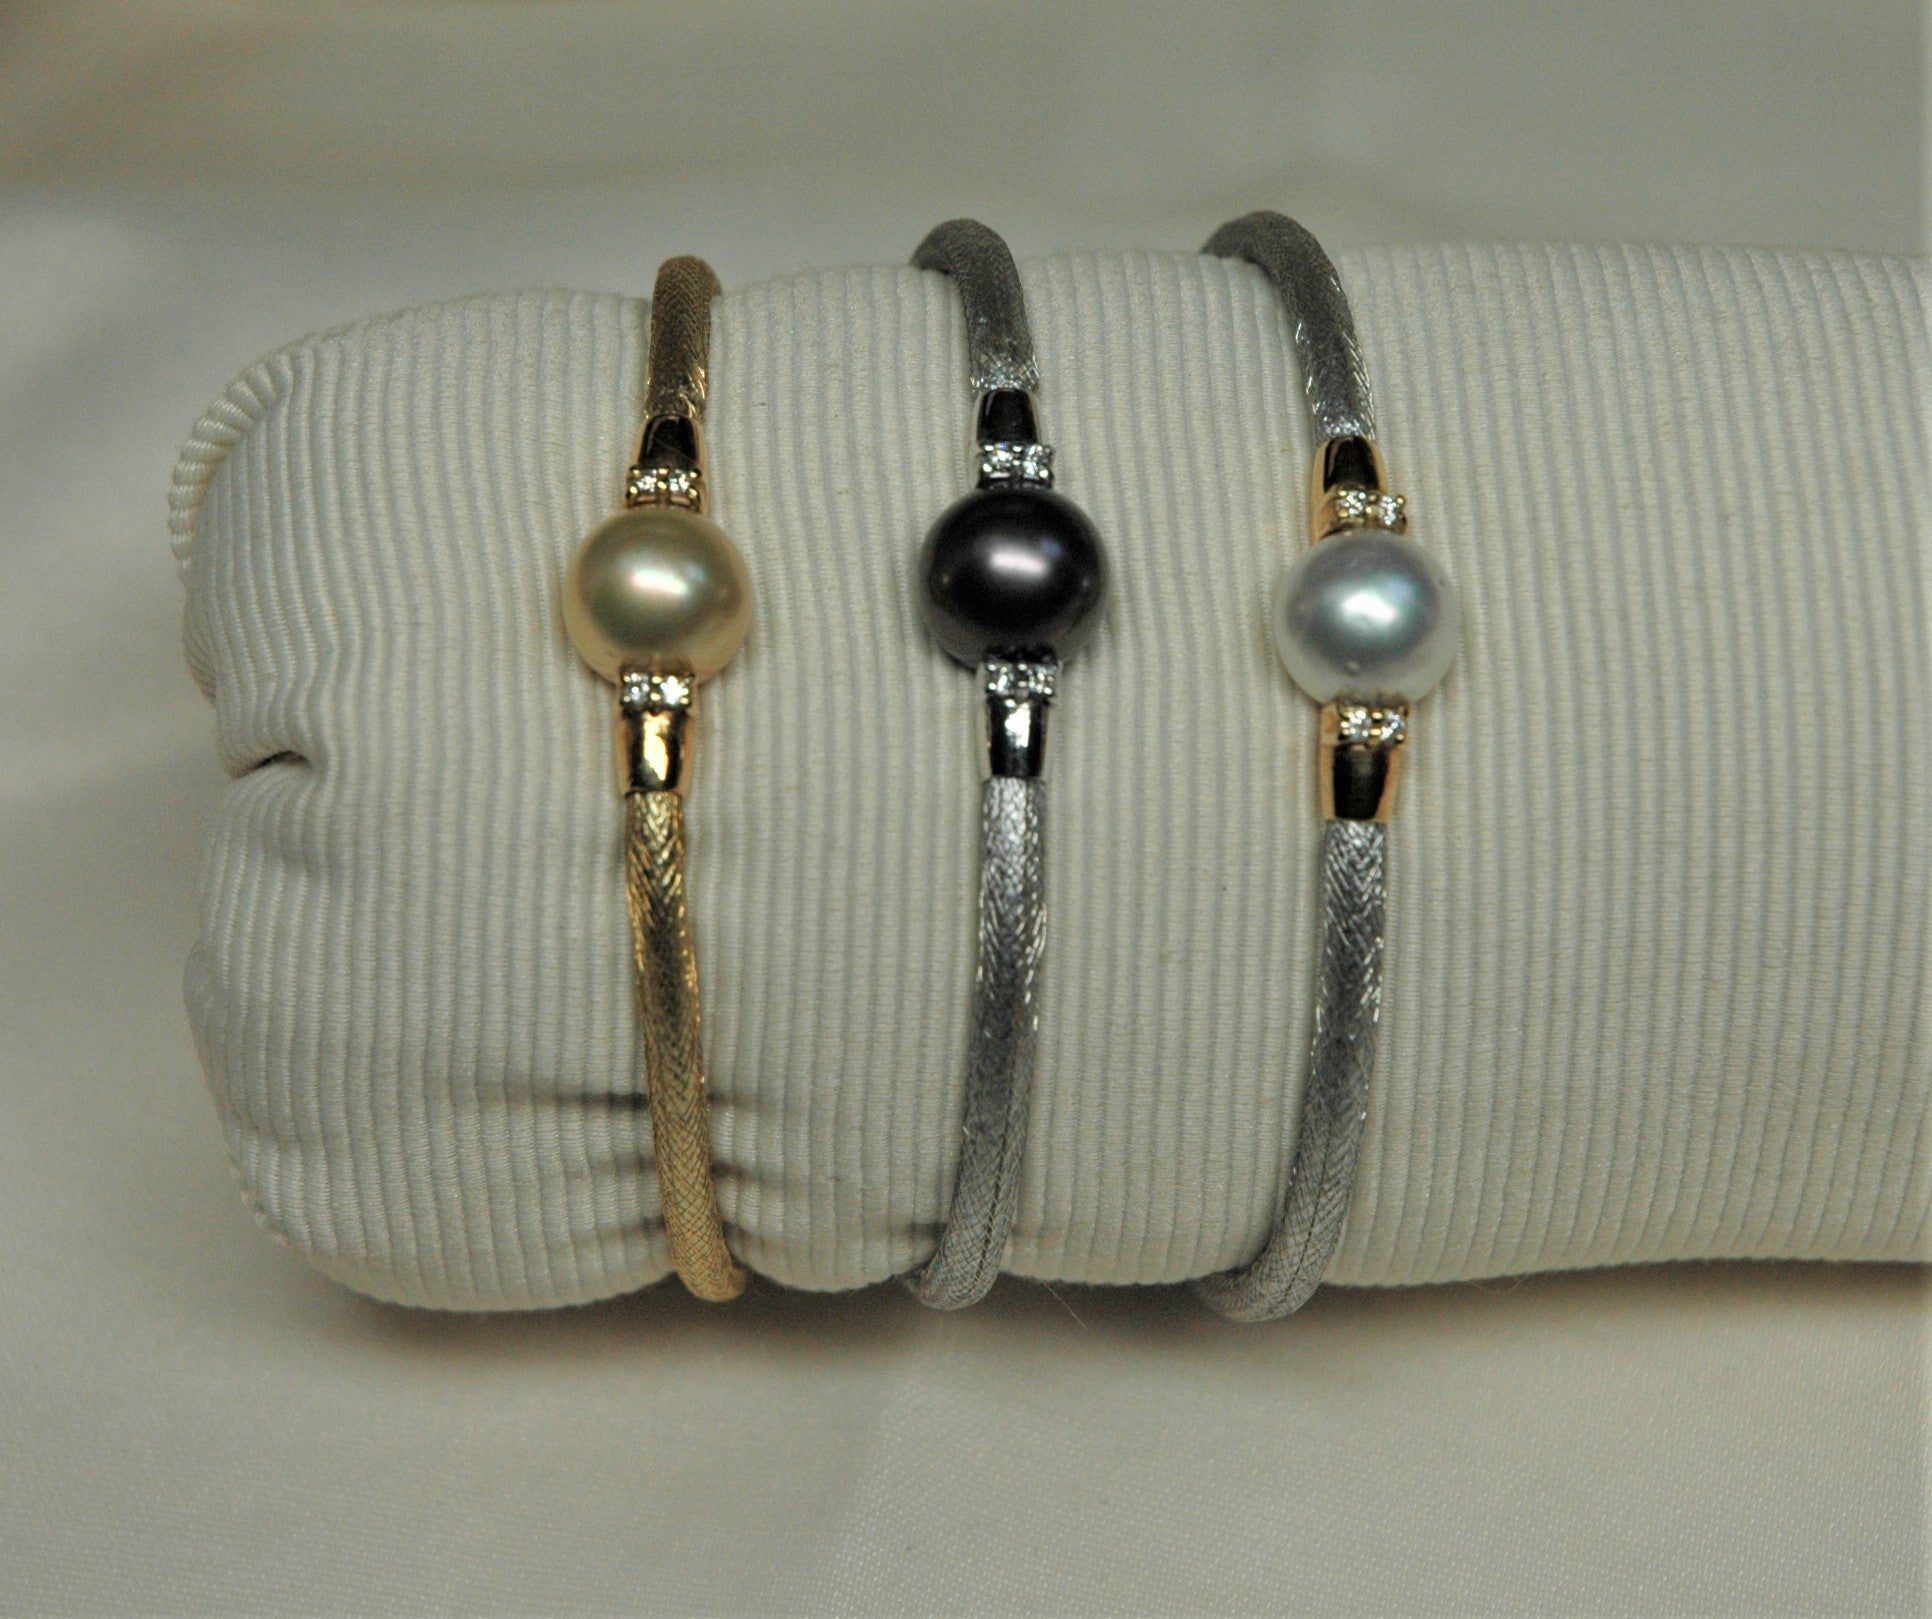 Halbreihige Armbänder aus Gelb- und Weißgold mit Perlen und Diamanten. Das Armband besteht aus einem ineinandergreifenden System, das eine innere Struktur abdeckt. Das Armband ist mit einer anderen Perle versehen: Weiß, Gold und Schwarz.